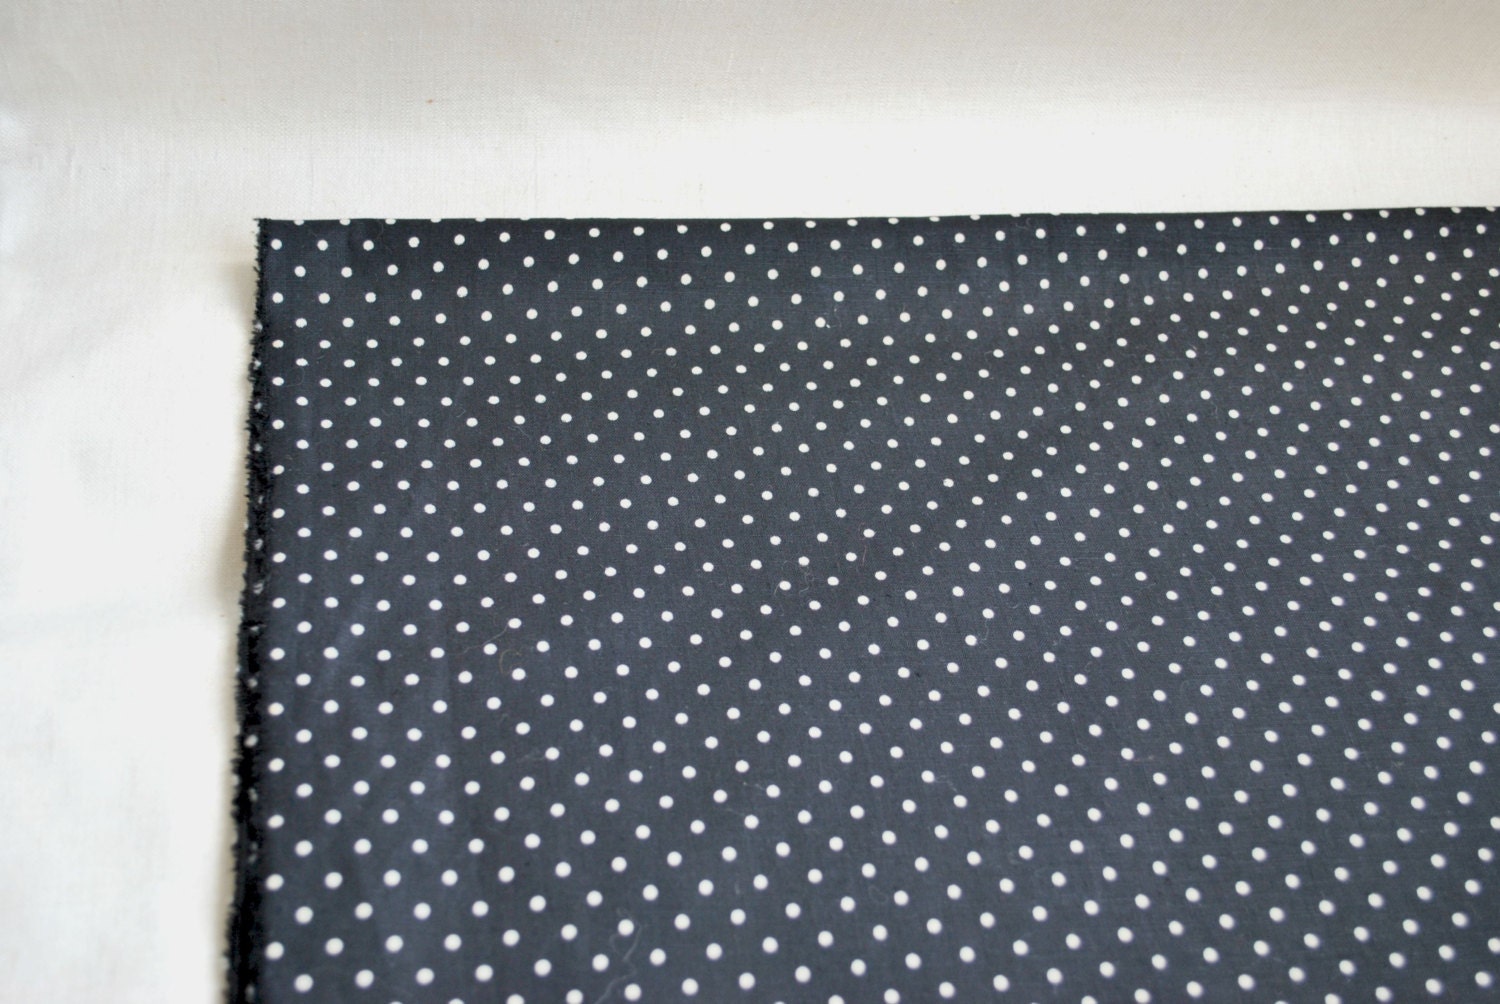 Black mini polka dot cotton fabric 2 yards tiny quilting